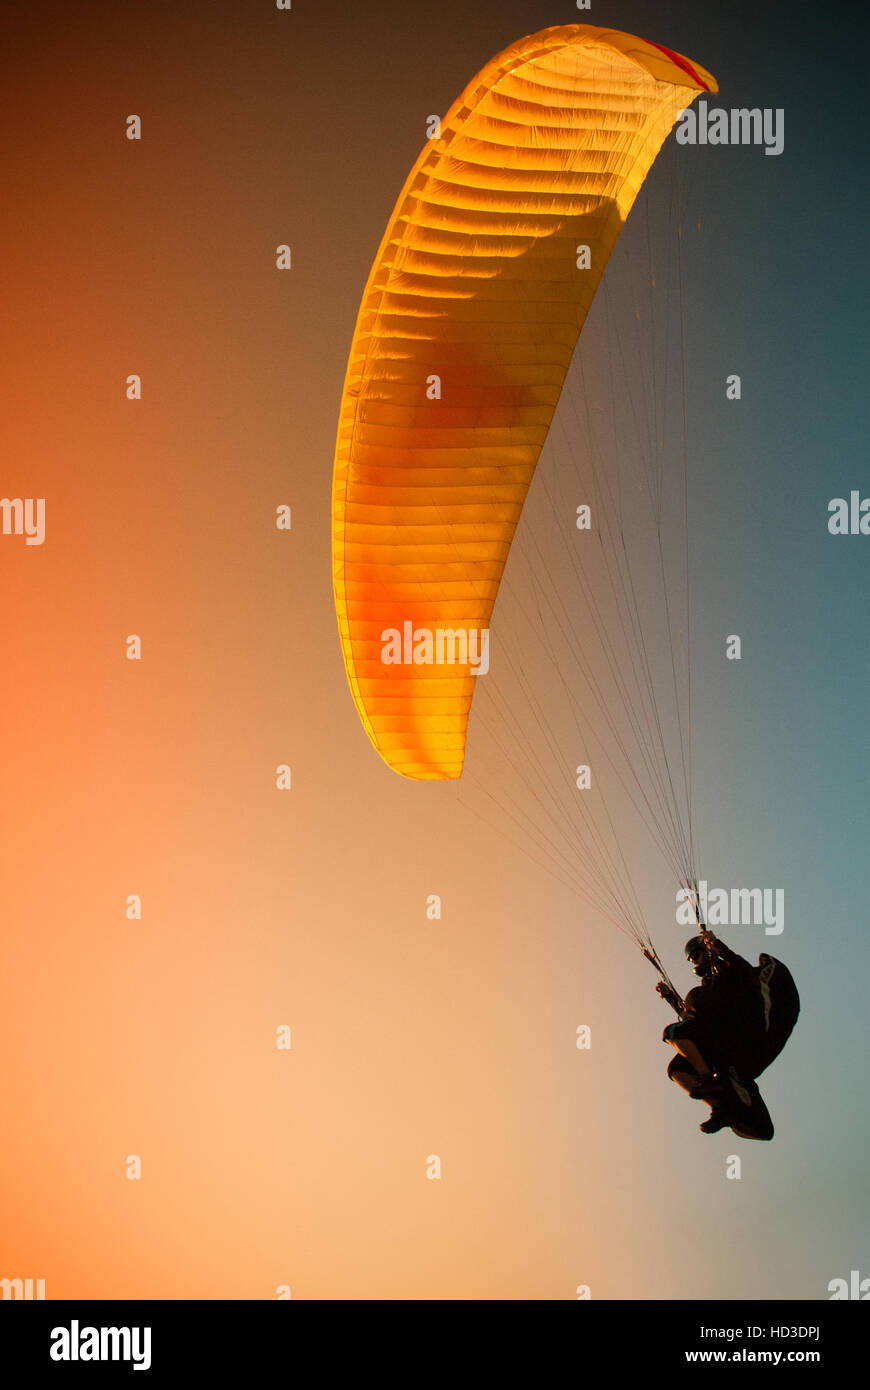 Vol parapente au ciel orange à Bielsko Biala montagne Zar en Pologne Banque D'Images